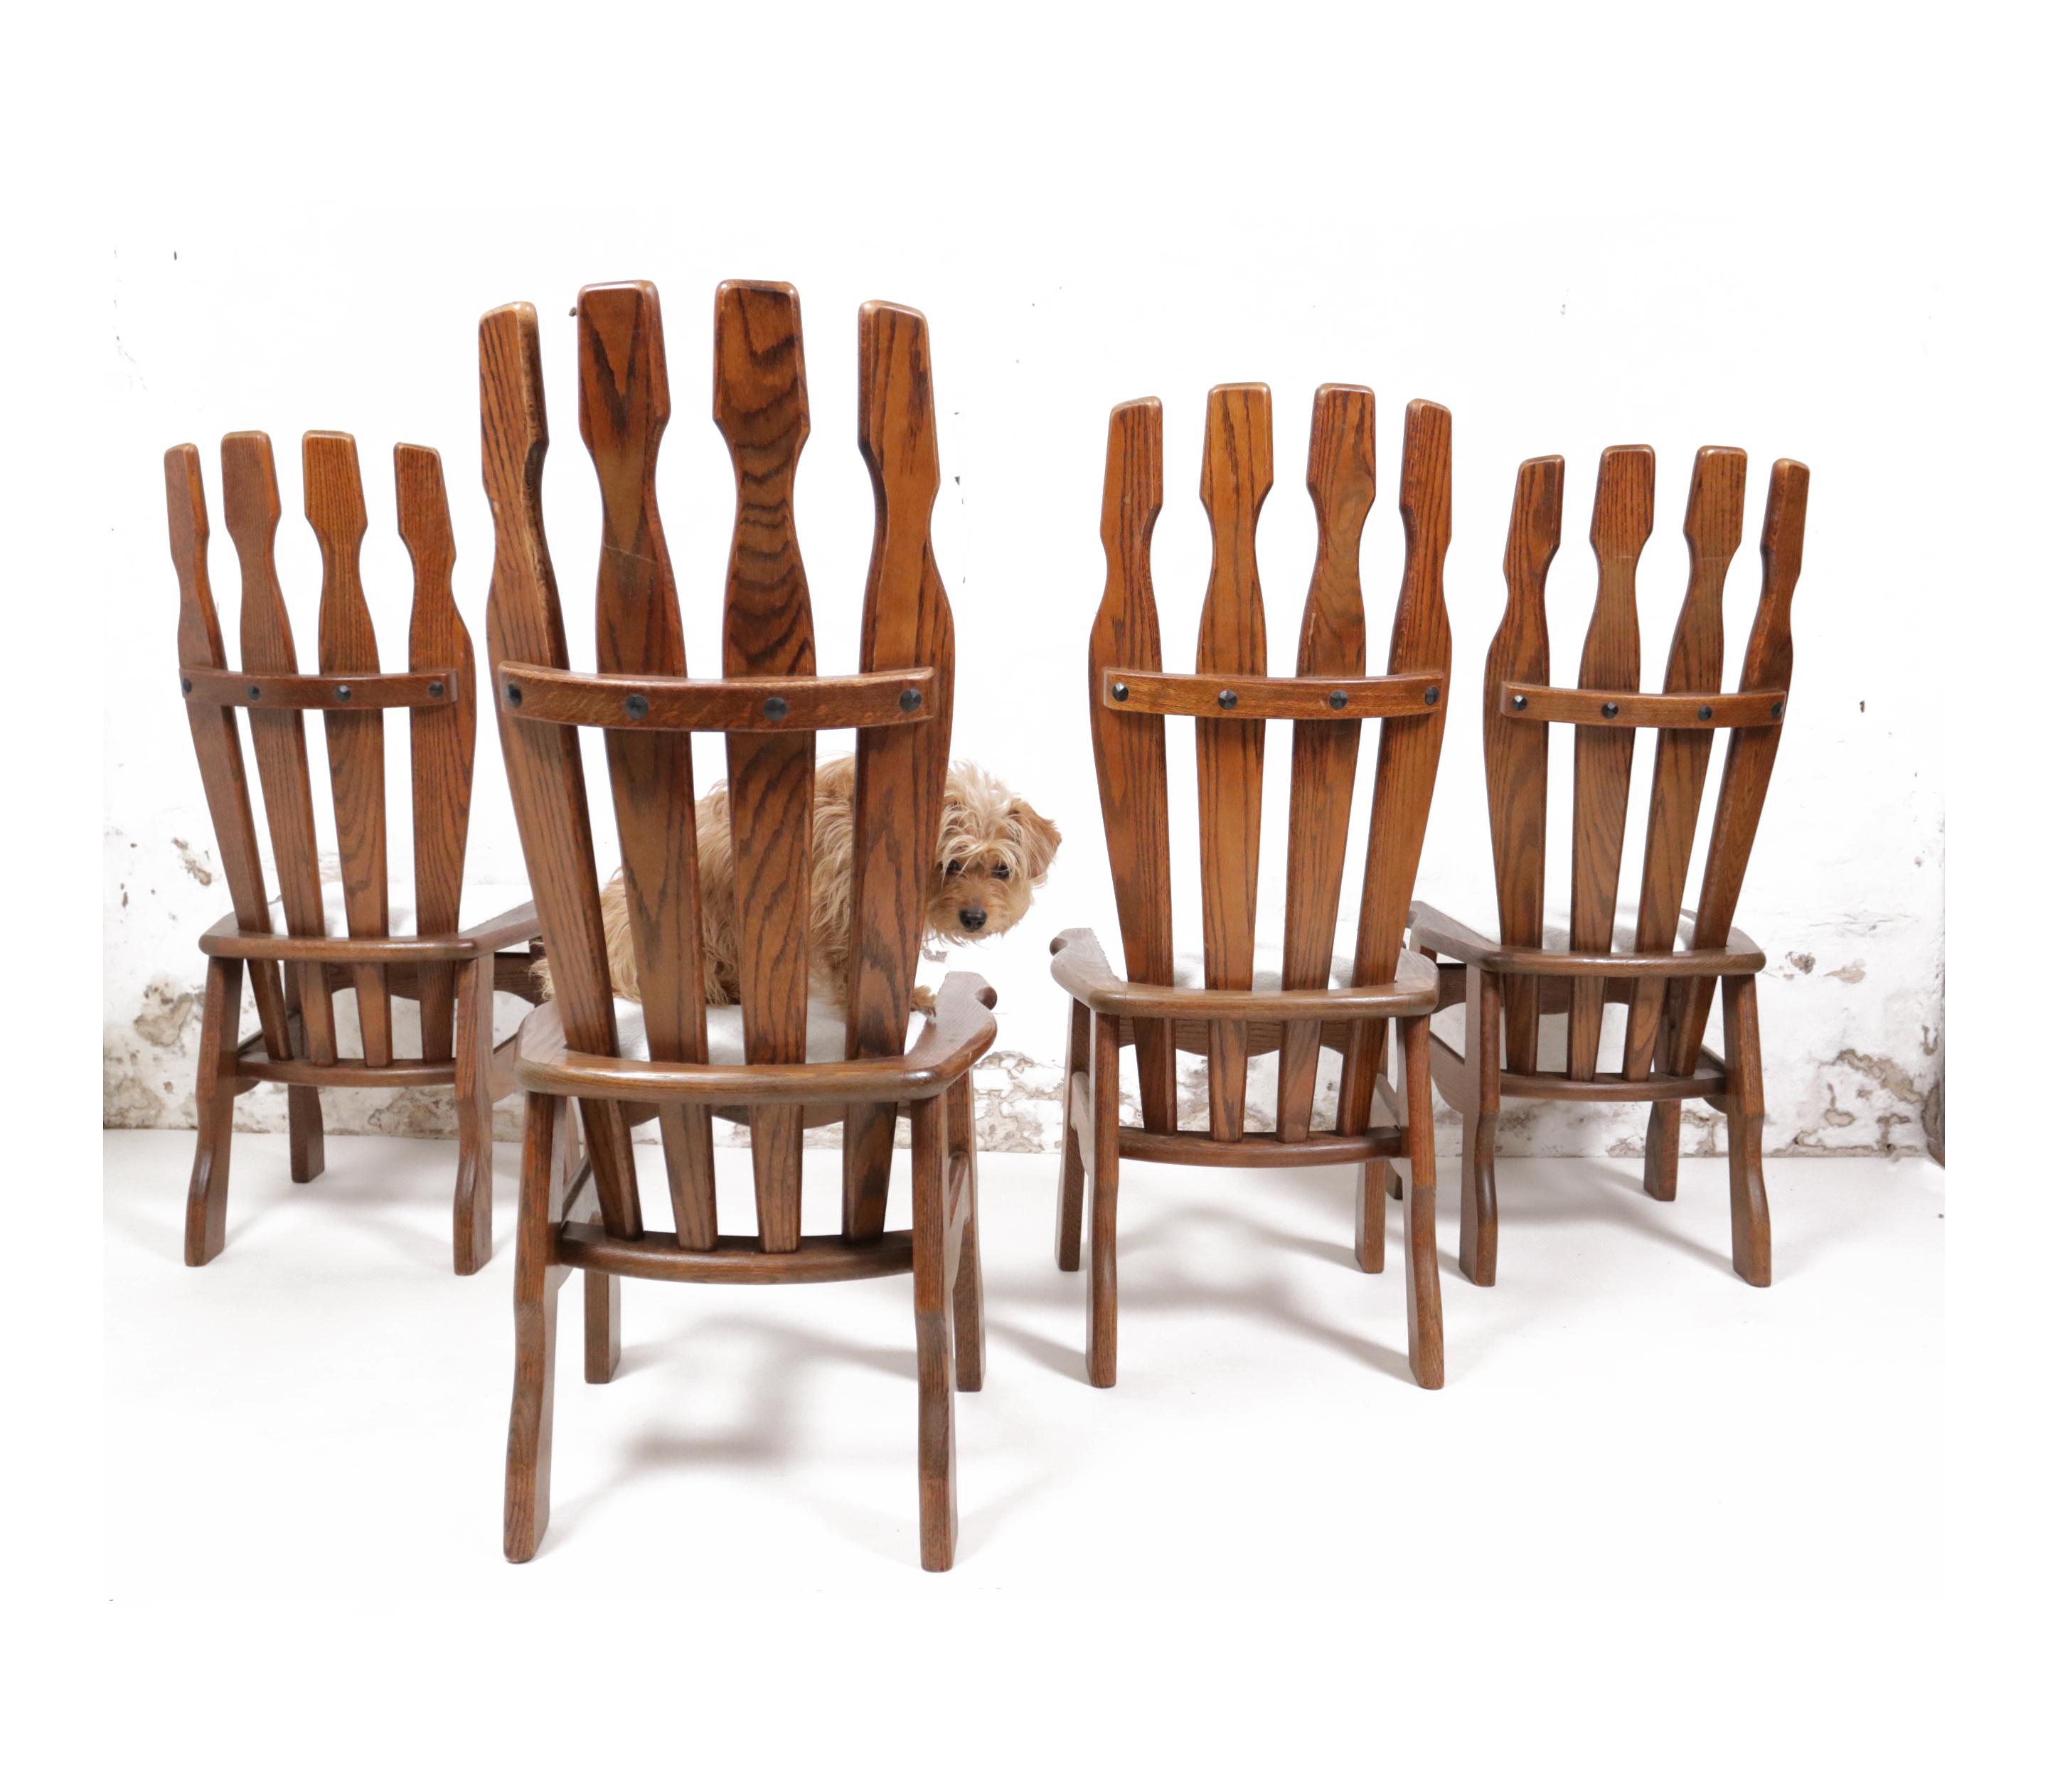 Diese Stühle haben ein einzigartiges und ausgeprägtes Design, das für die 1970er Jahre charakteristisch ist. Sie werden aus Eichenholz gefertigt und sind langlebig und robust gebaut. Die Wahl des Bouclé-Stoffes für die Neupolsterung sorgt für ein